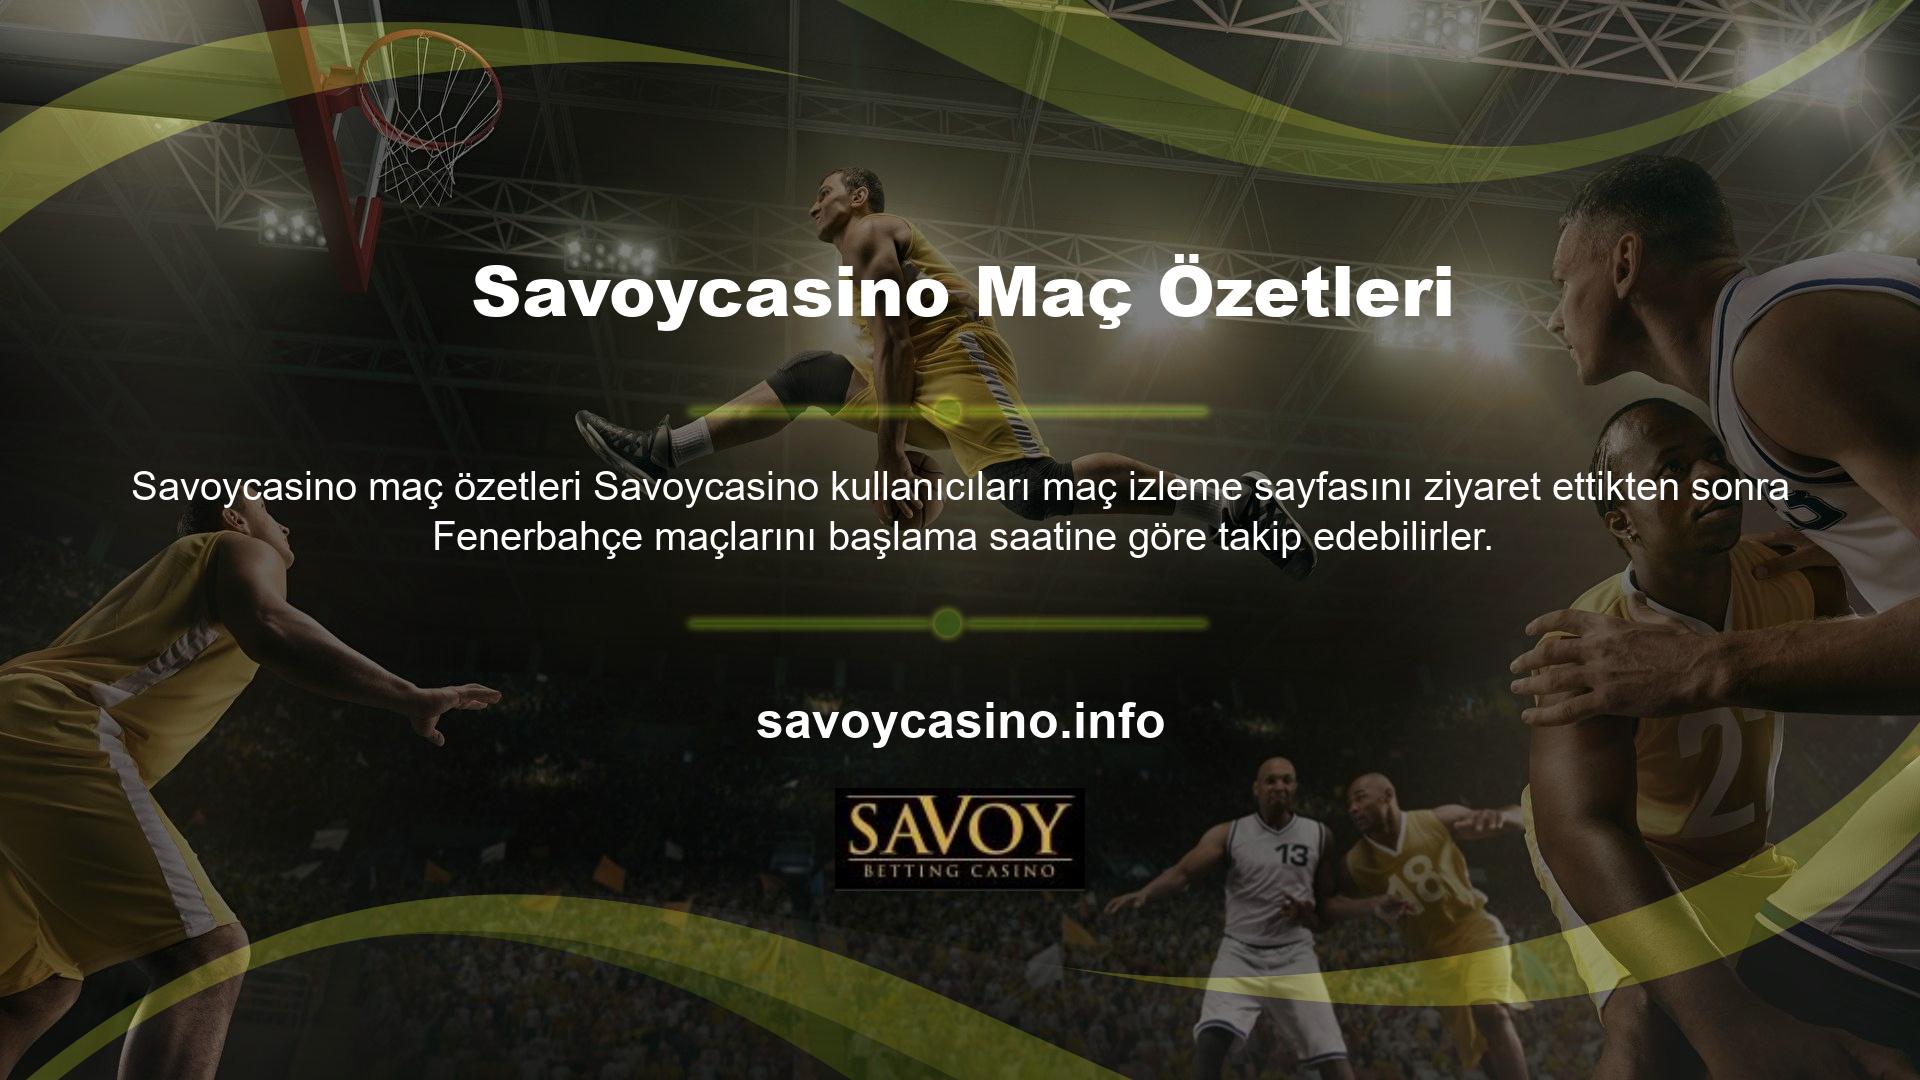 Fenerbahçe maçlarını canlı izleyemeyen kullanıcılar kısa maç özetlerini maç özetleri bölümündeki video içeriğinden izleyebilirler